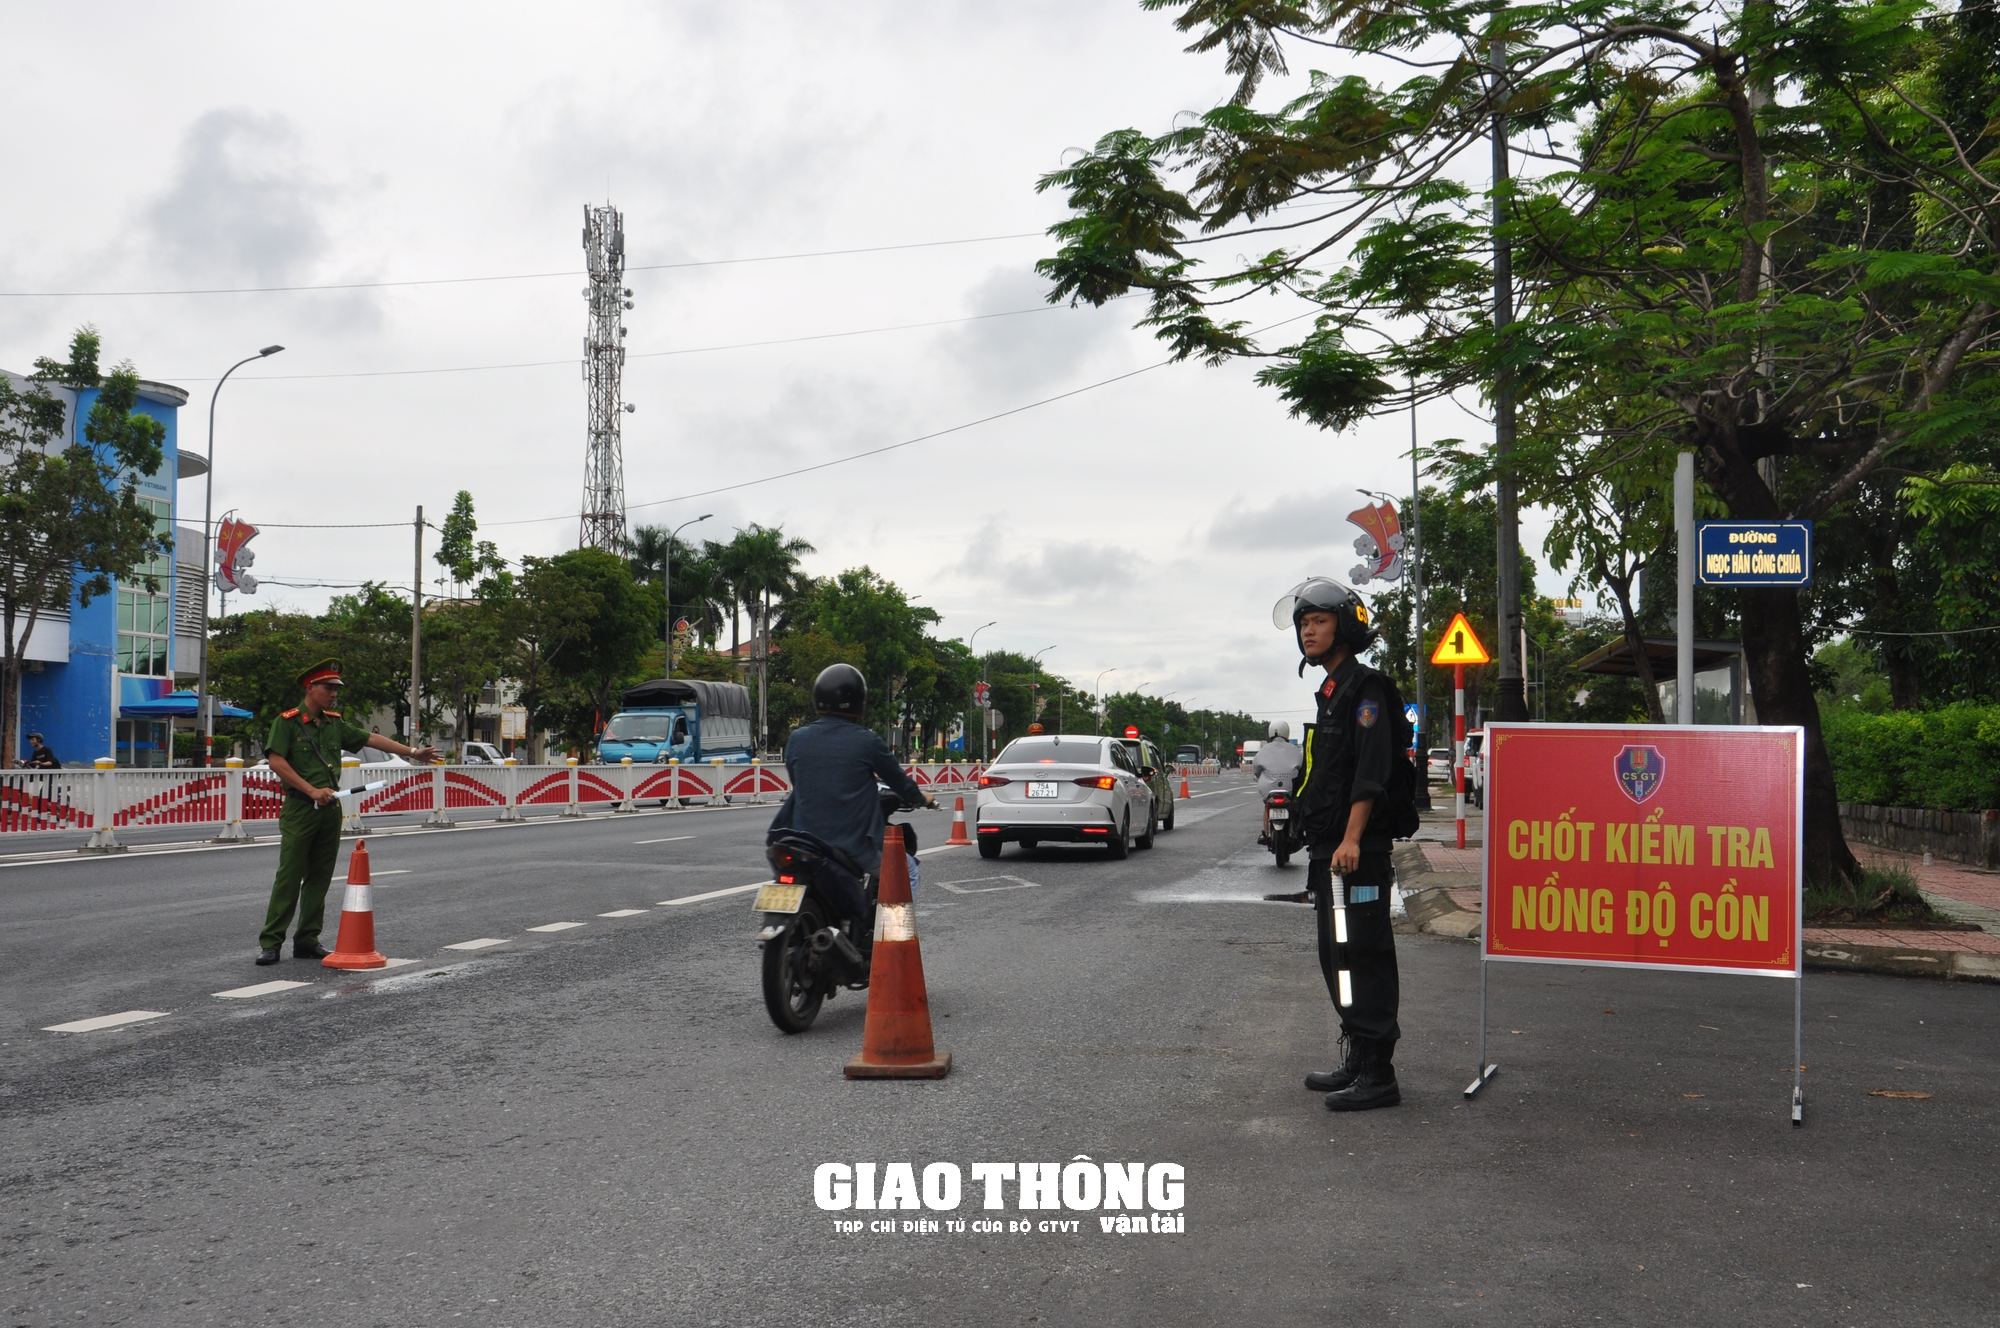 Dàn trận xử lý nồng độ cồn trên QL1 ở tỉnh Thừa Thiên-Huế: Loạt người vi phạm sau bữa ăn trưa - Ảnh 5.